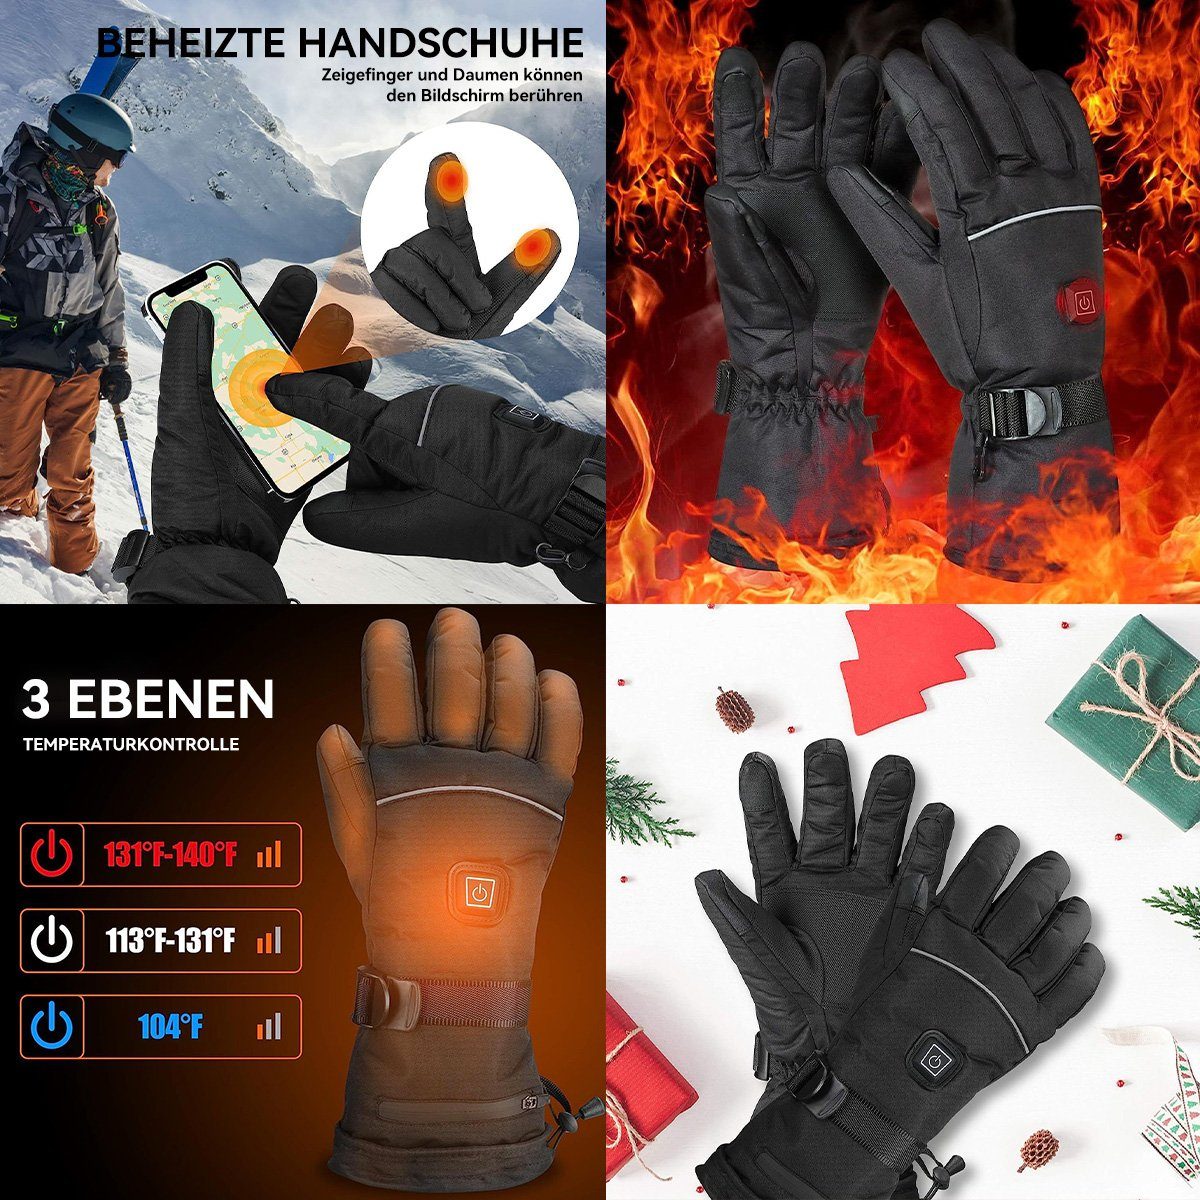 stufige Handschuhe,Wasserdicht,Winddicht,3 Fahrradhandschuhe Beheizte DOPWii Temperaturregelung